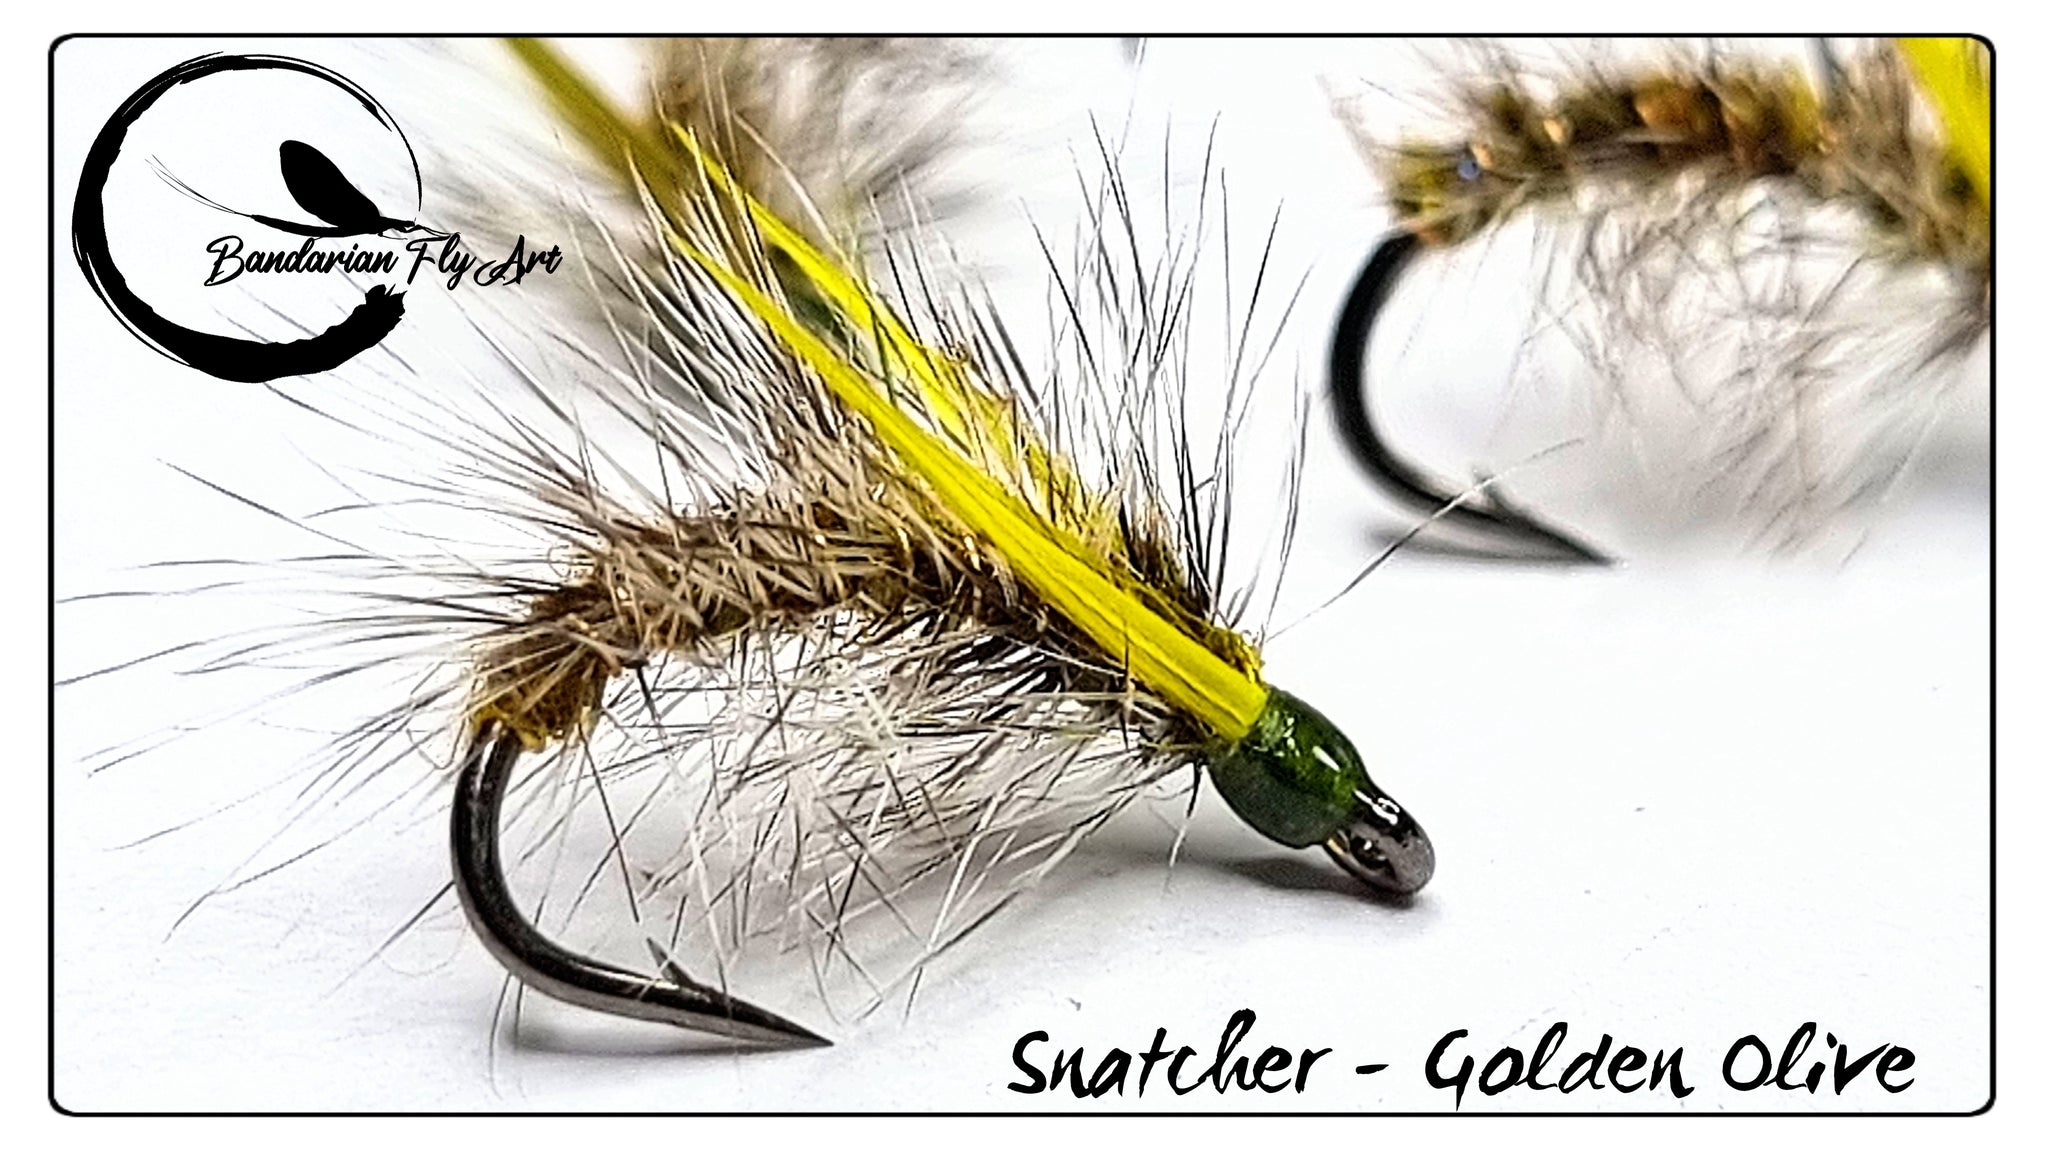 Snatcher - Golden Olive